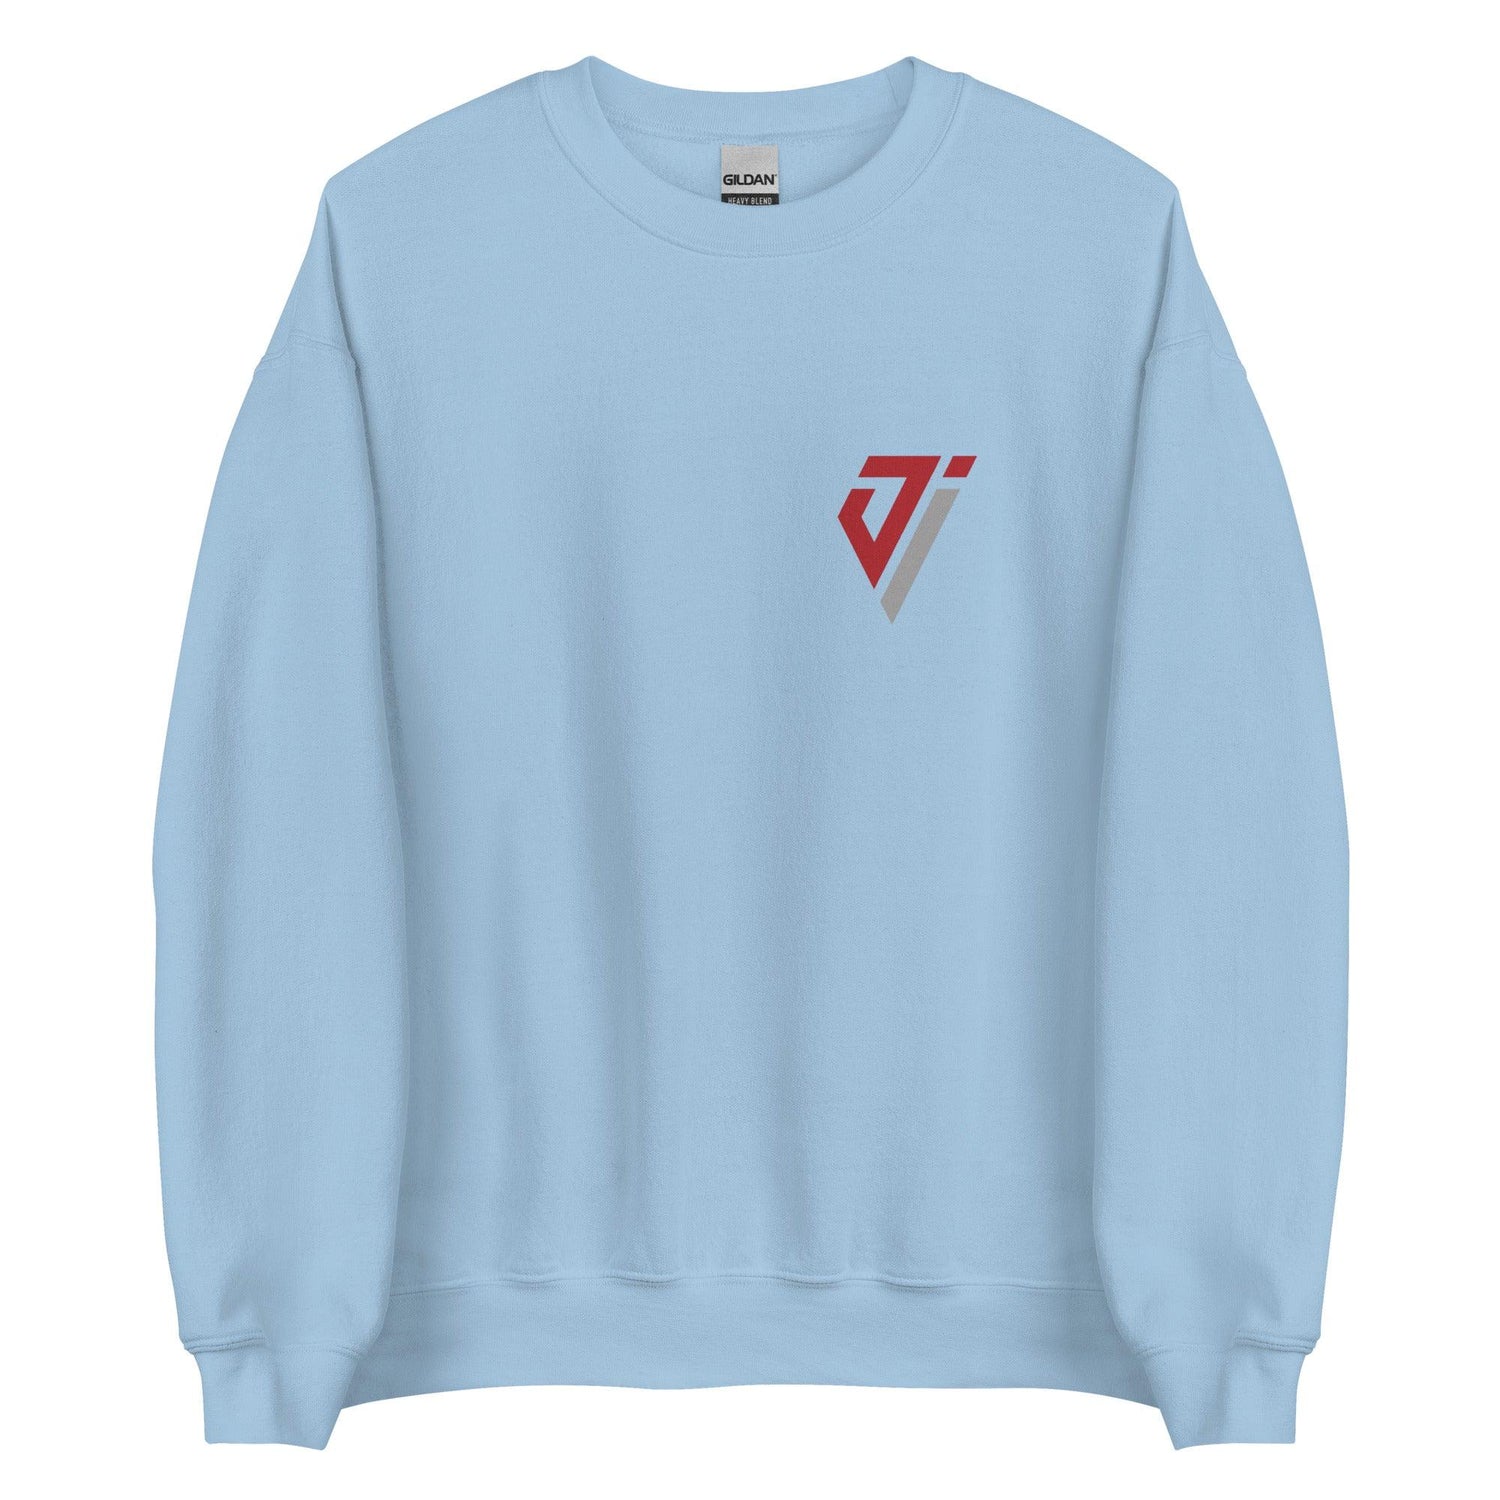 Jimond Ivey "Essential" Sweatshirt - Fan Arch